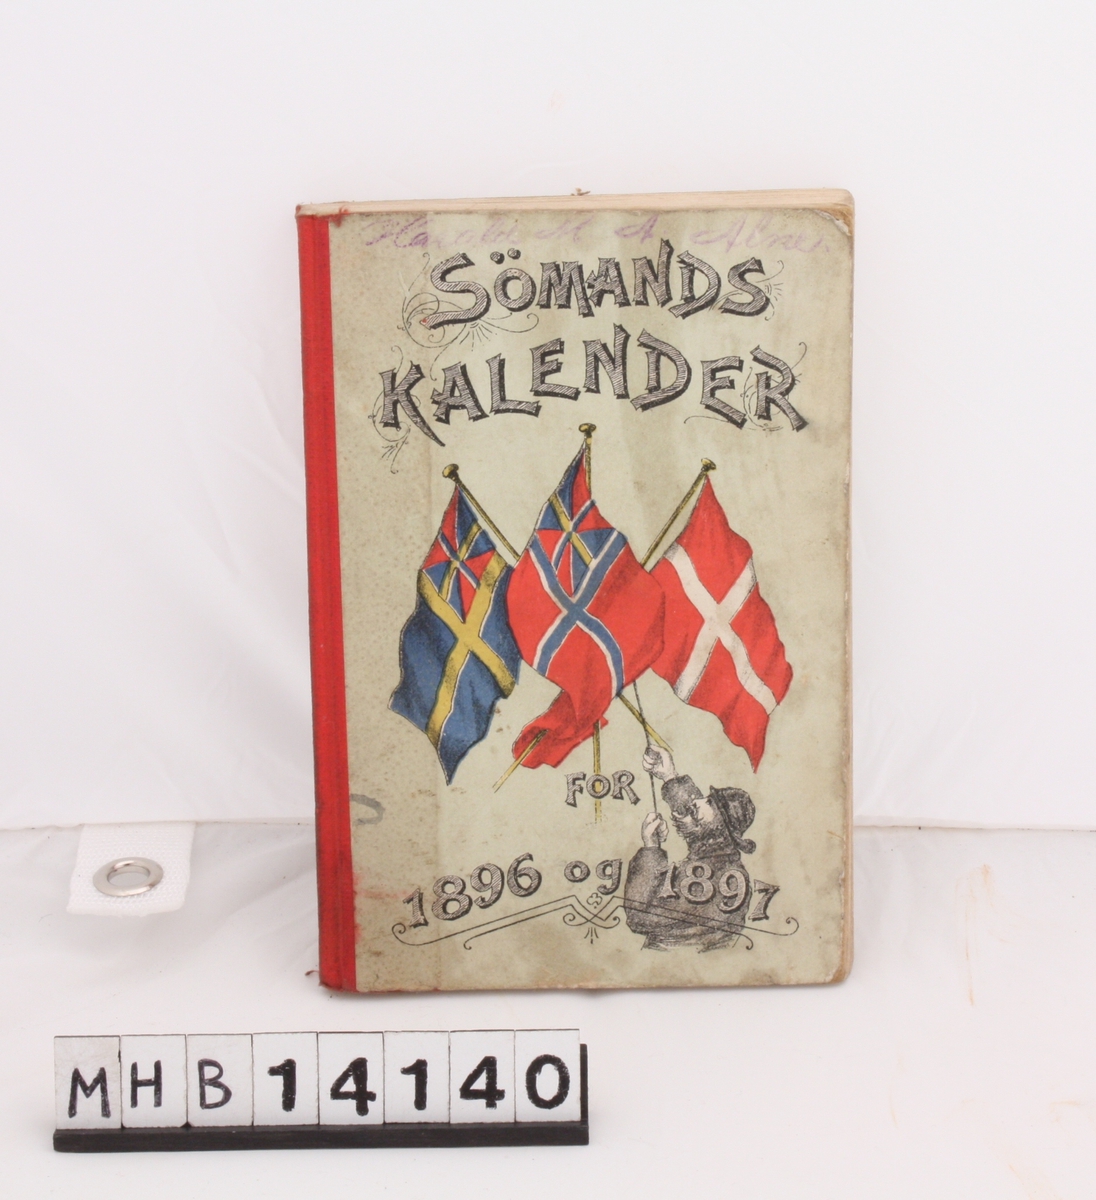 Rektangulær bok med grågrønn innbinding i papp og rød rygg. På forsiden er det danske flagget, samt det svenske og norske, begge med unionsmerket. Boka inneholder kalender og reklame.